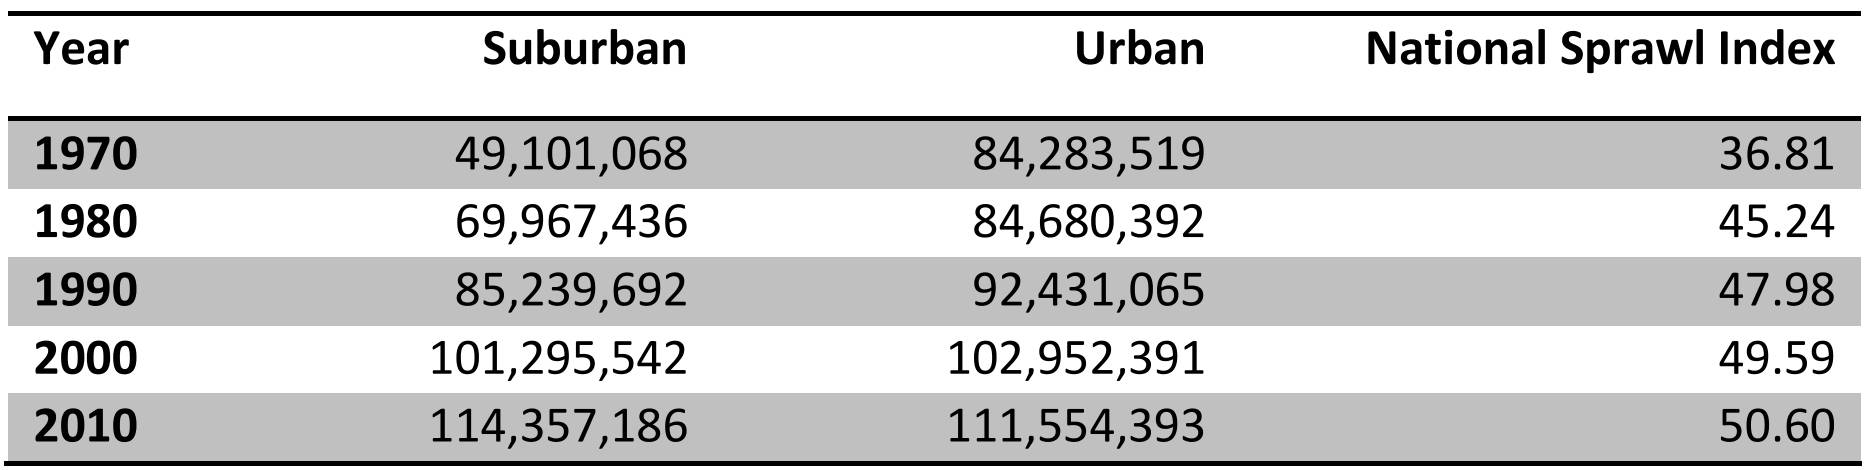 Bevölkerungsentwicklung in US-Metropolregionen nach suburbanen und urbanen Räumen zwischen 1970 und 2010 - Tabelle: